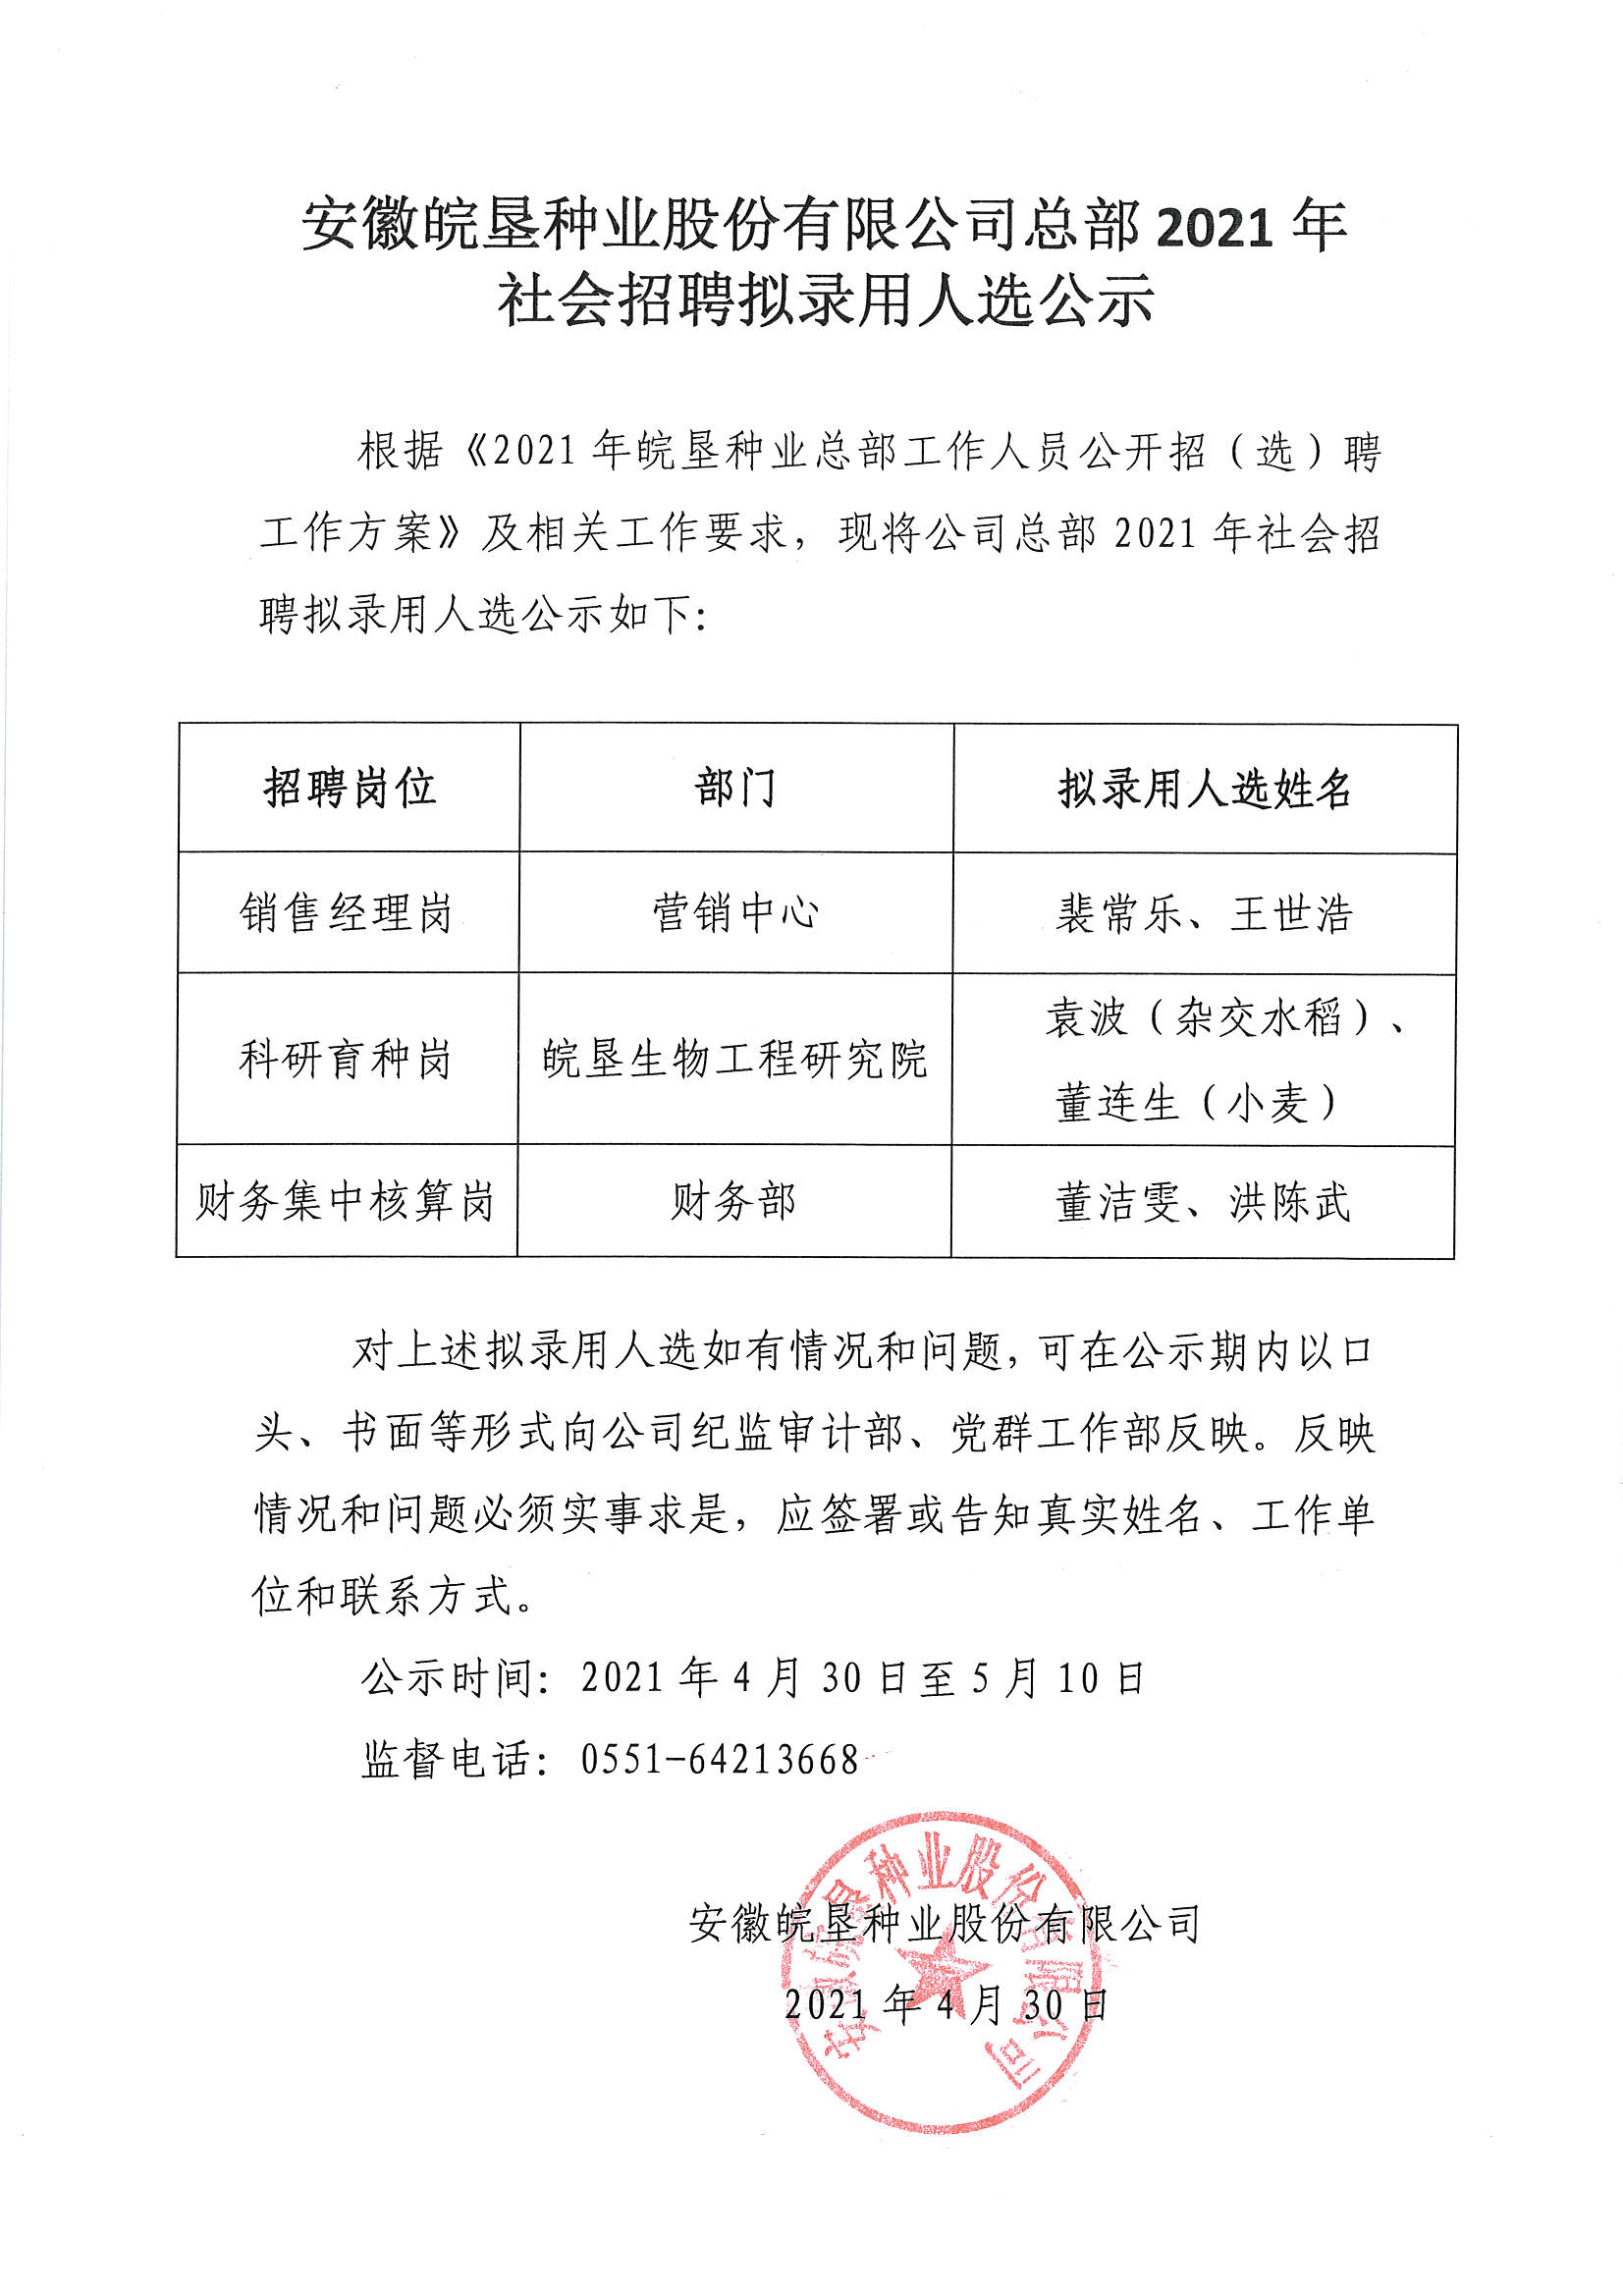 安徽皖垦种业股份有限公司总部2021年社会招聘拟录用人选公示